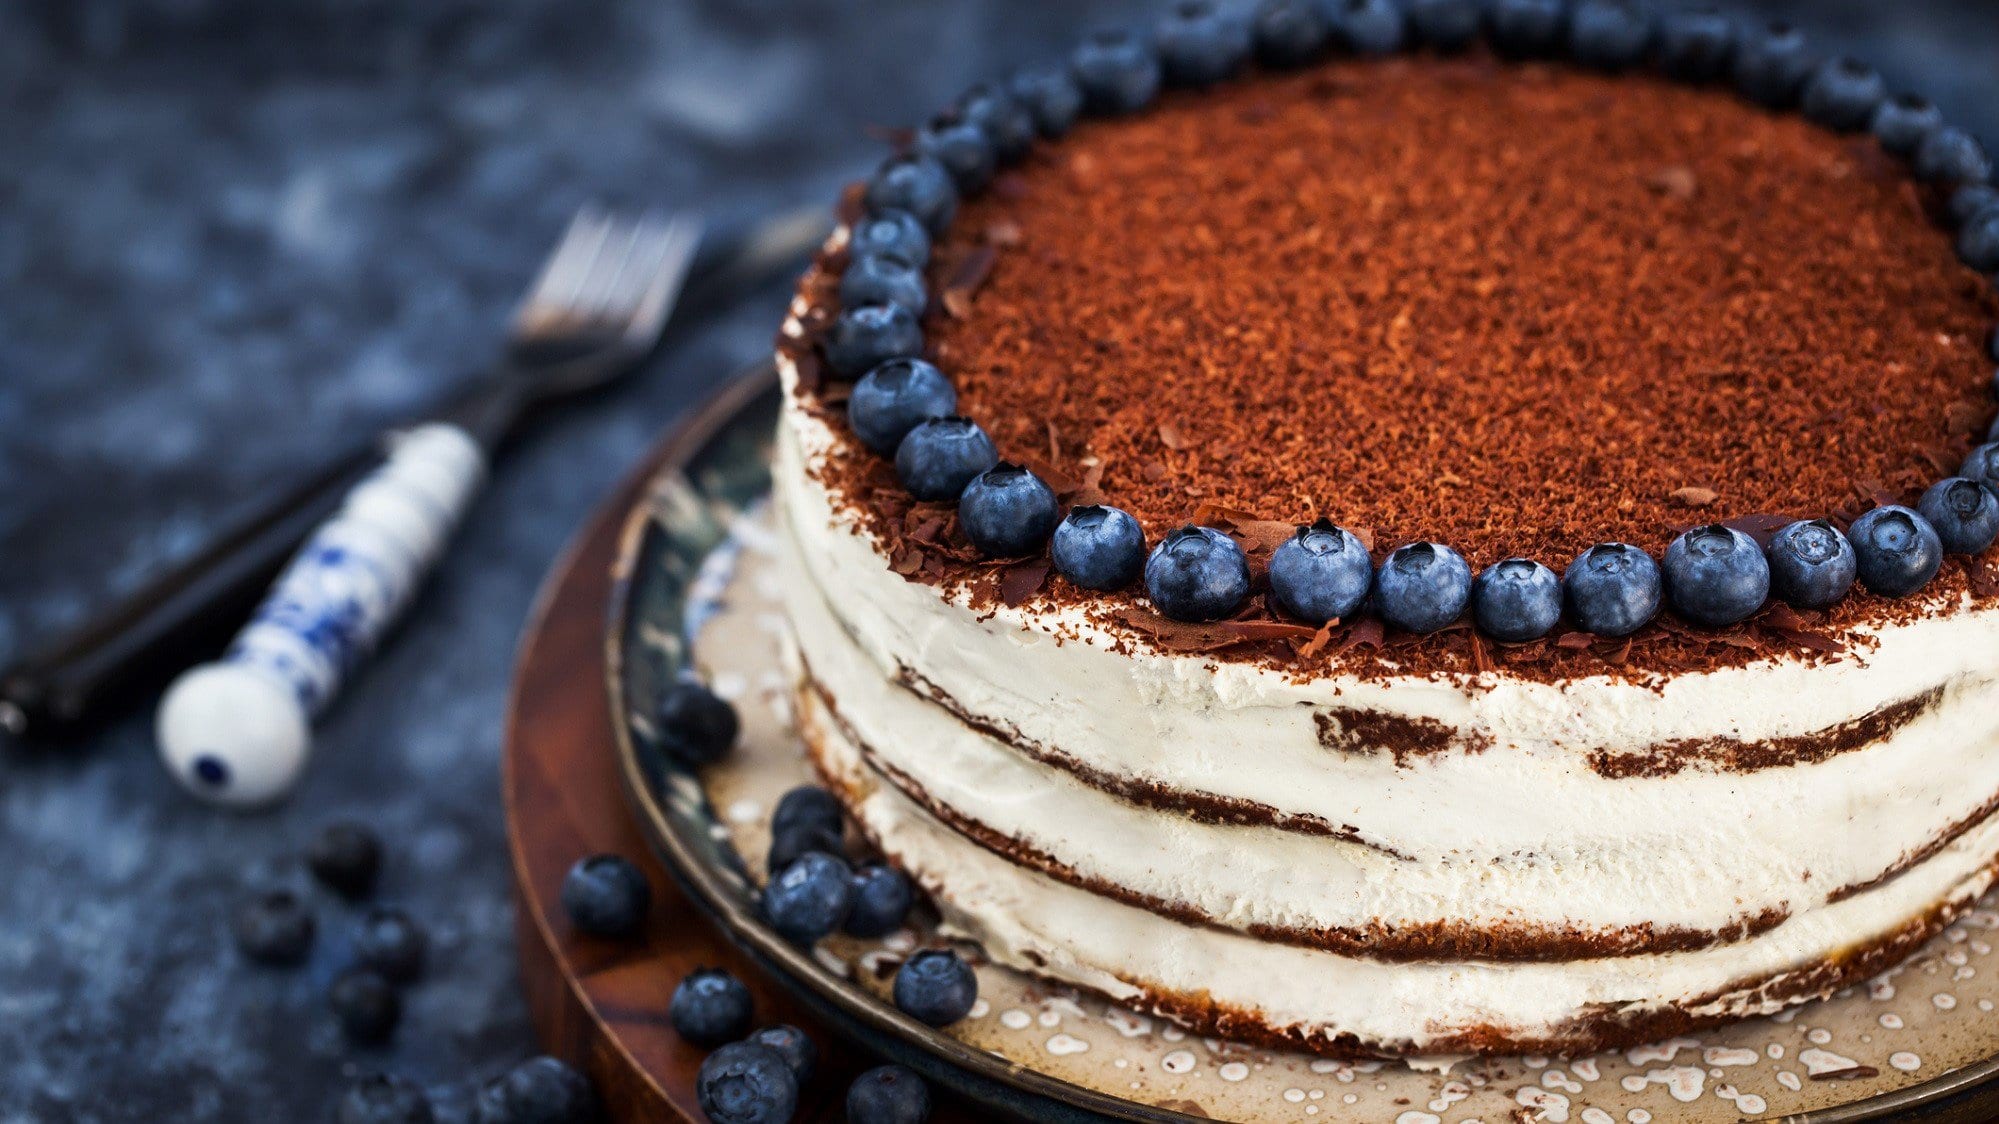 Auf einem Teller steht ein Naked Cake mit Blaubeeren am Rande des Kuchens. Er ist mit Schokoraspeln bestreut. Daneben liegt Besteck.